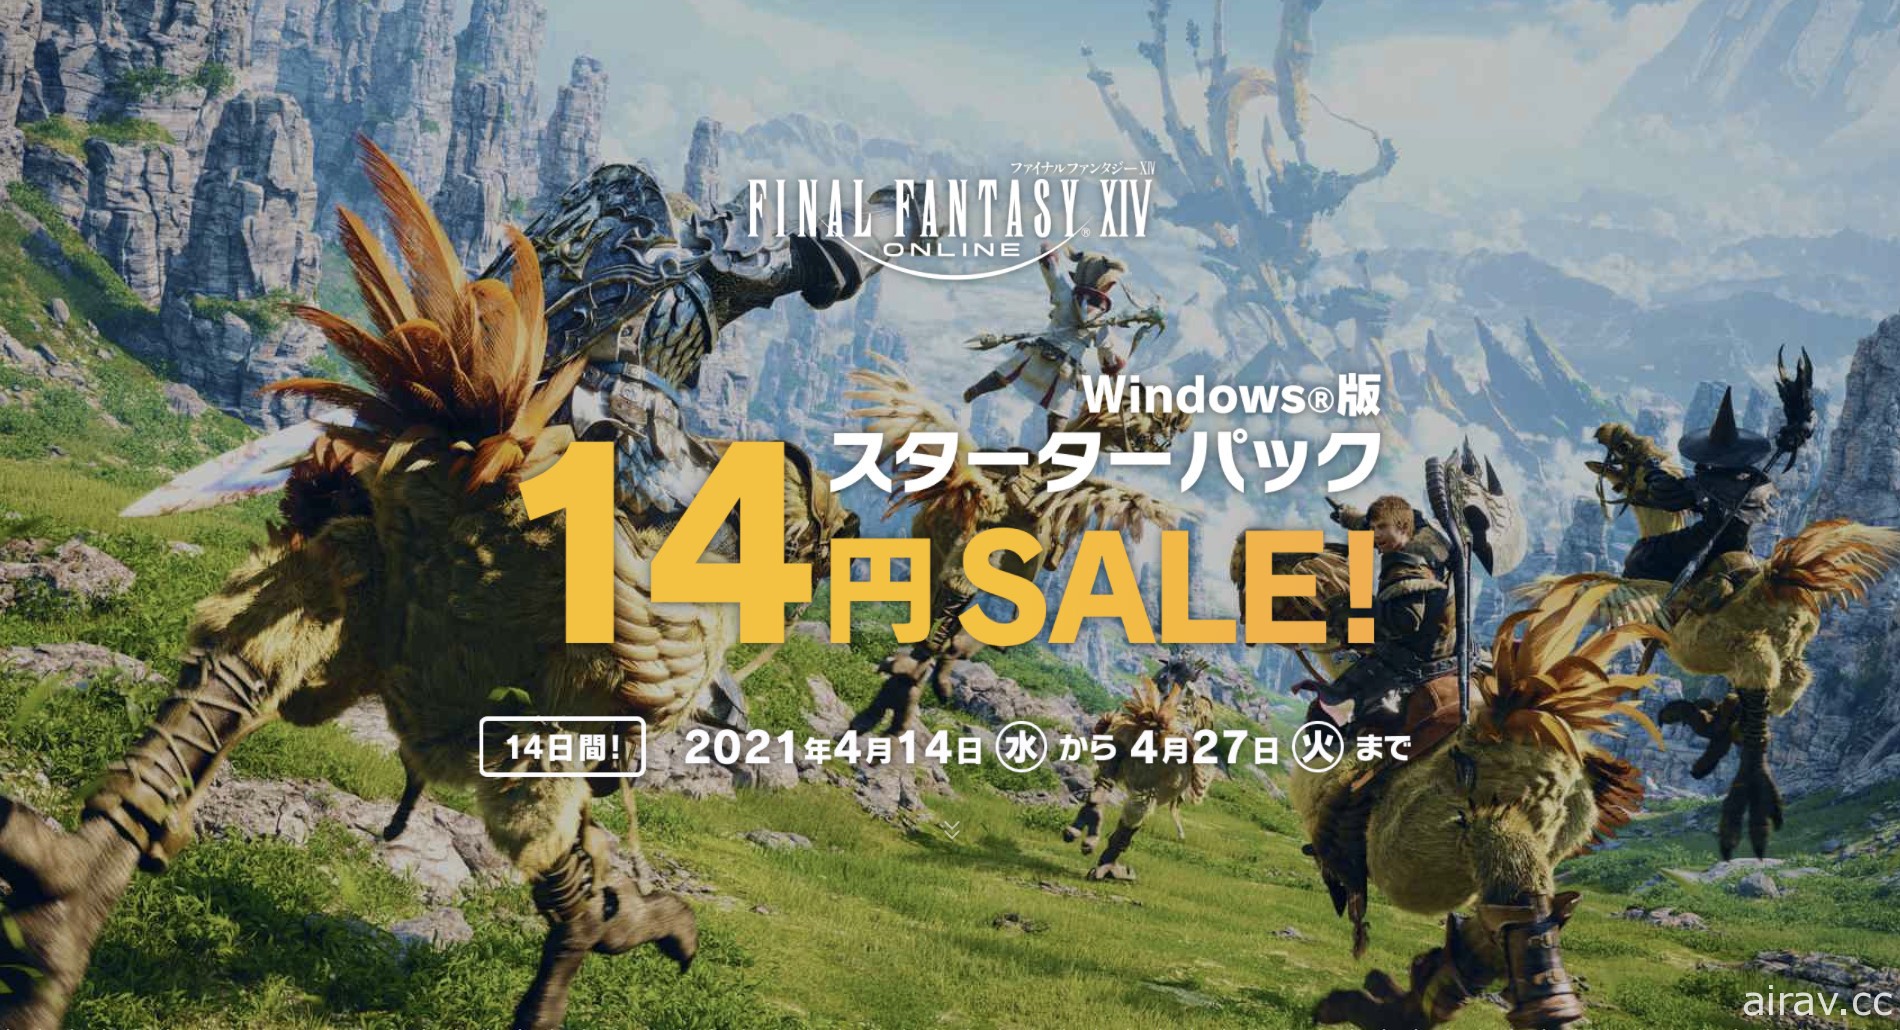 《Final Fantasy XIV》PC 版 14 日起限時 14 天以 14 日圓銅板價提供